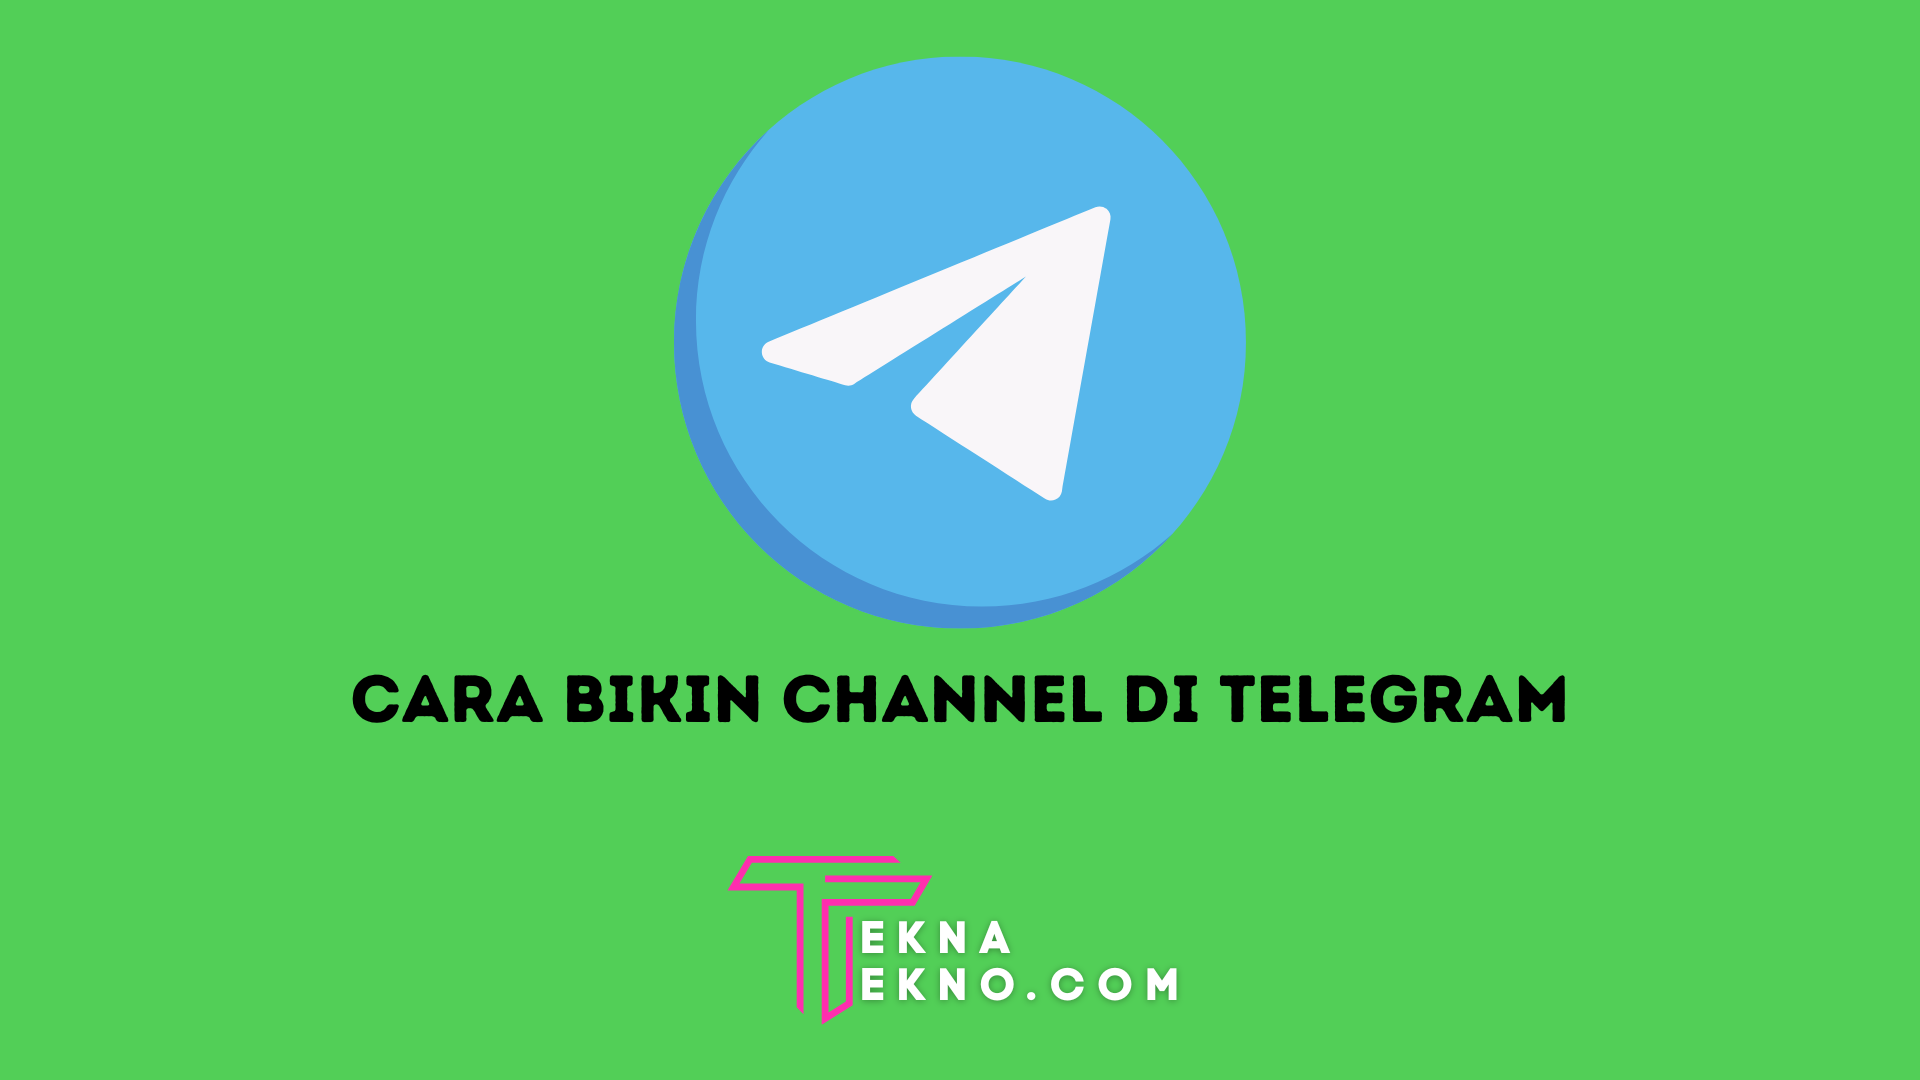 10 Cara Membuat Channel di Aplikasi Telegram dengan Cepat dan Mudah